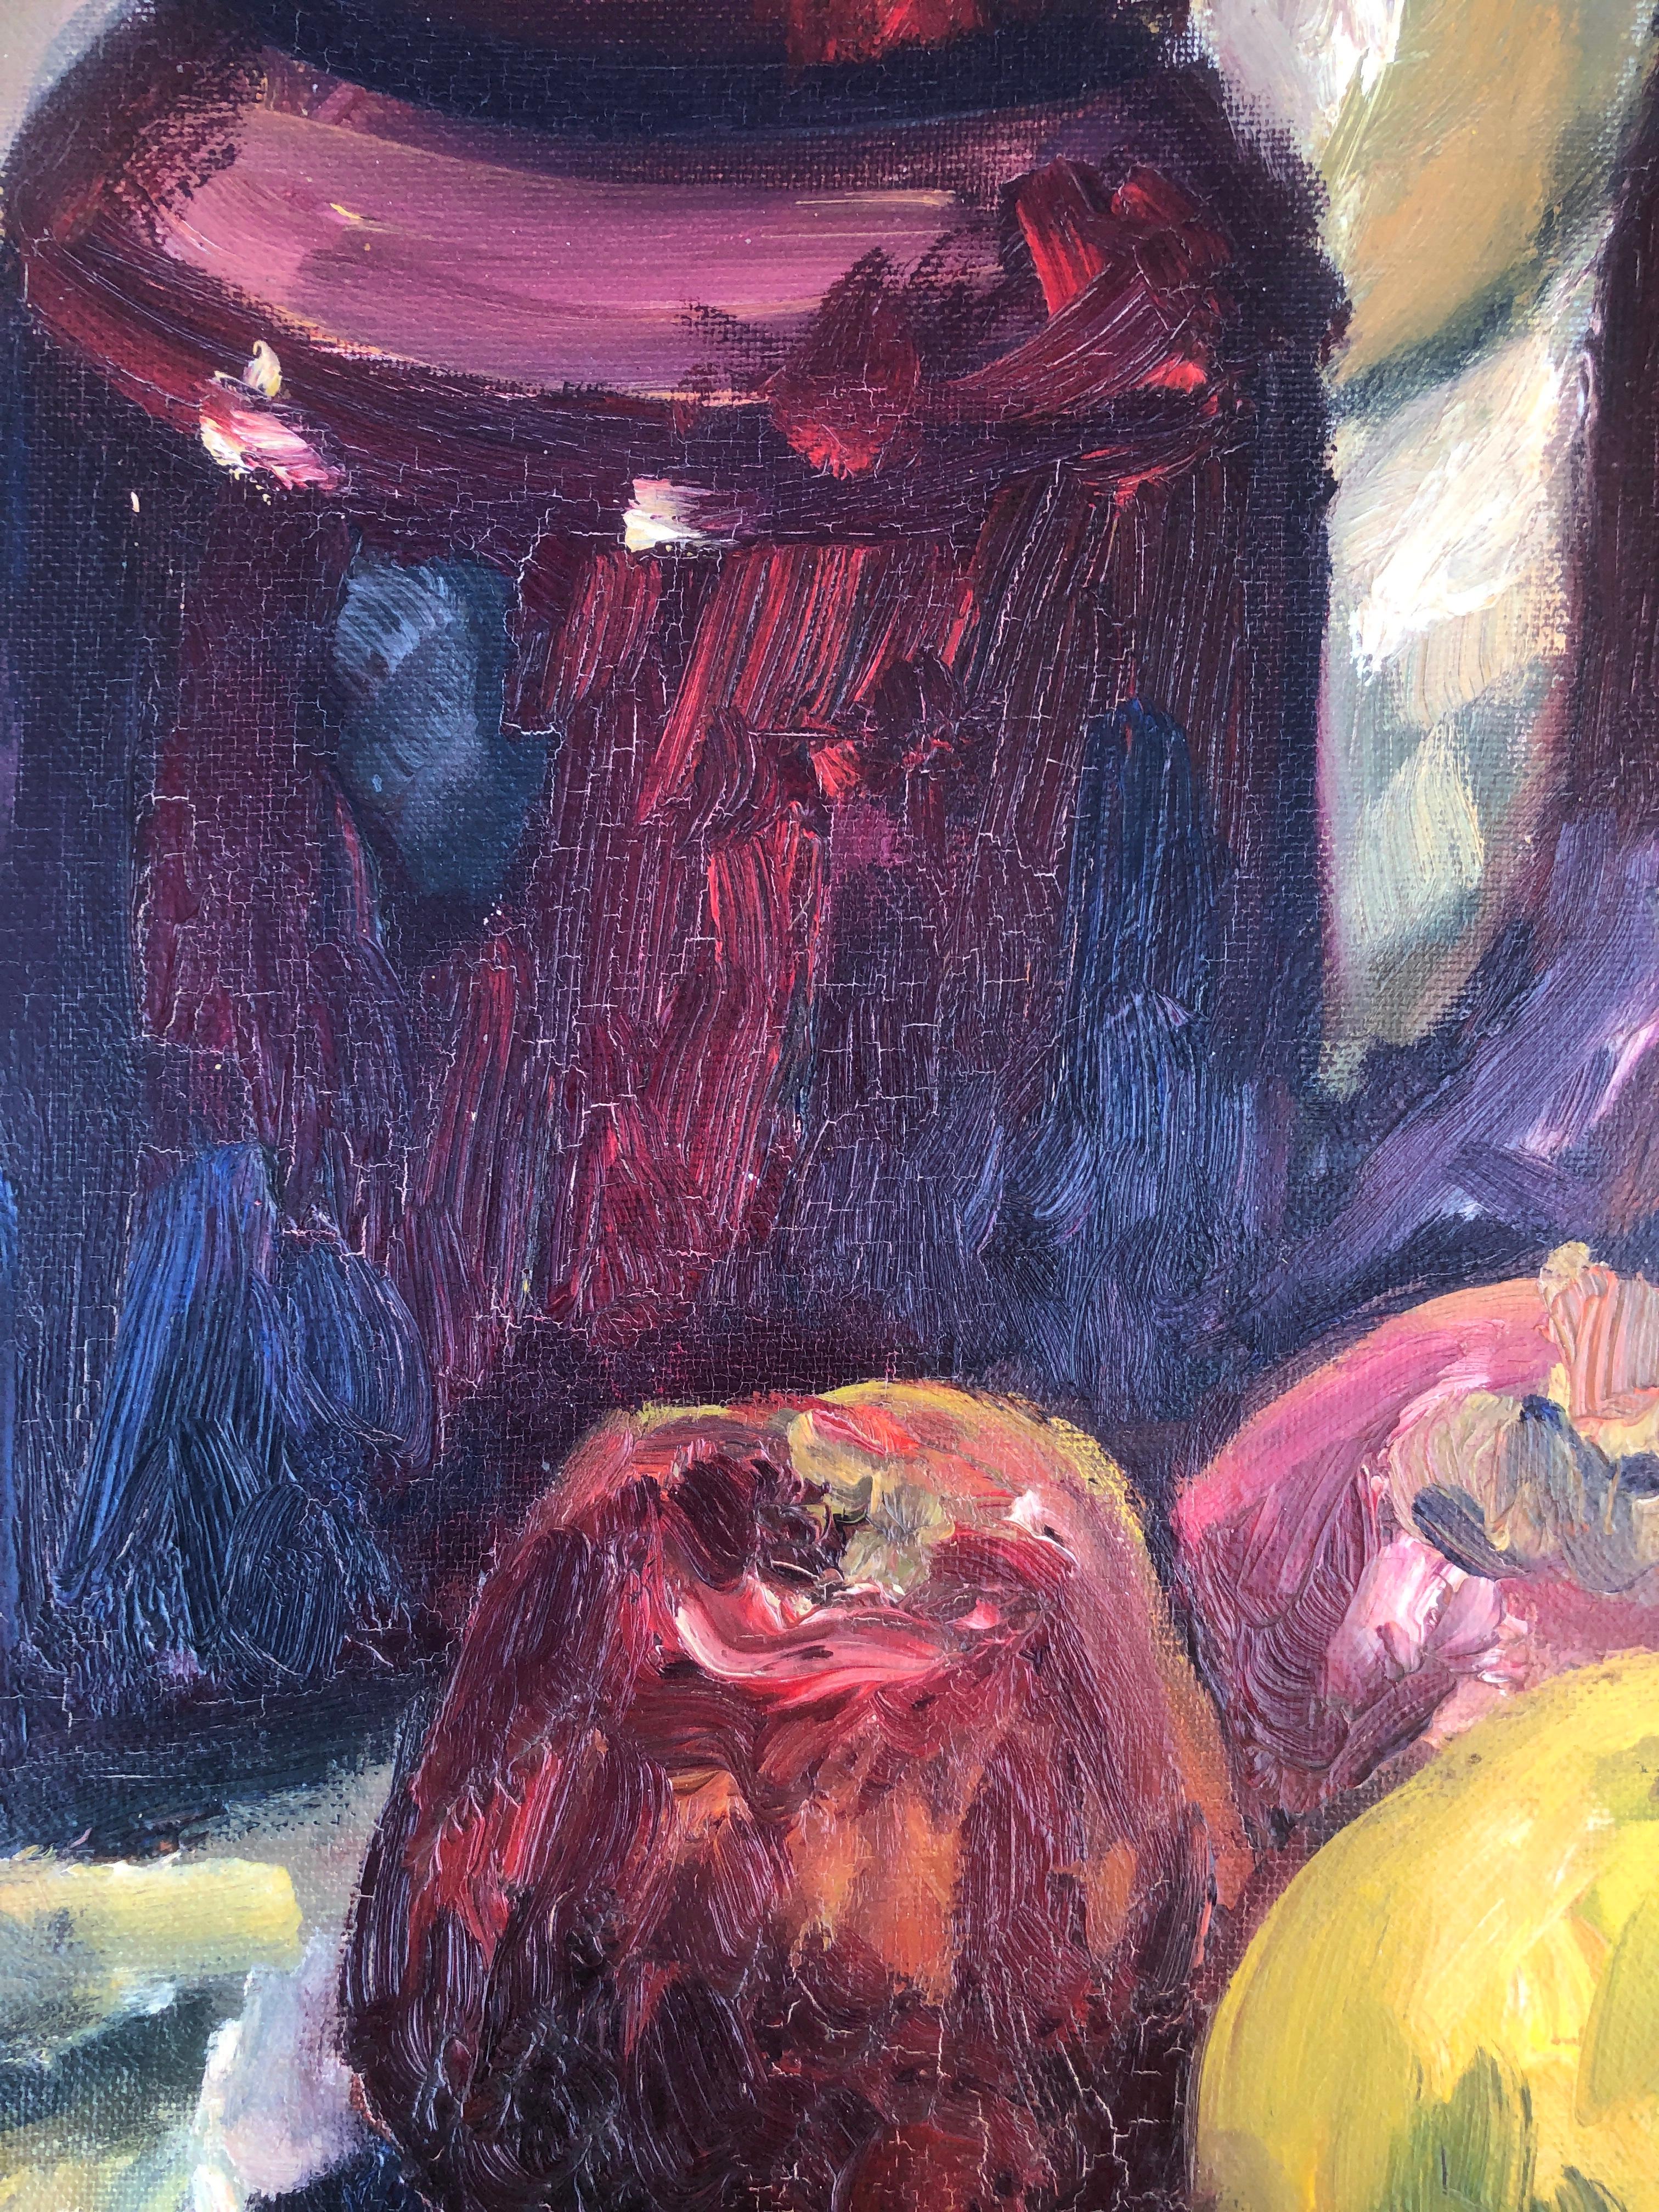 Pilar Margenat (1939) - Nature morte - Huile sur toile
L'huile mesure 92x73 cm.
Sans cadre.

Il est né le 2 août 1939 à Sant Quirze del Vallés (Barcelone).

Il a étudié le dessin et la peinture à l'école Massana de Barcelone.

Elle est membre du